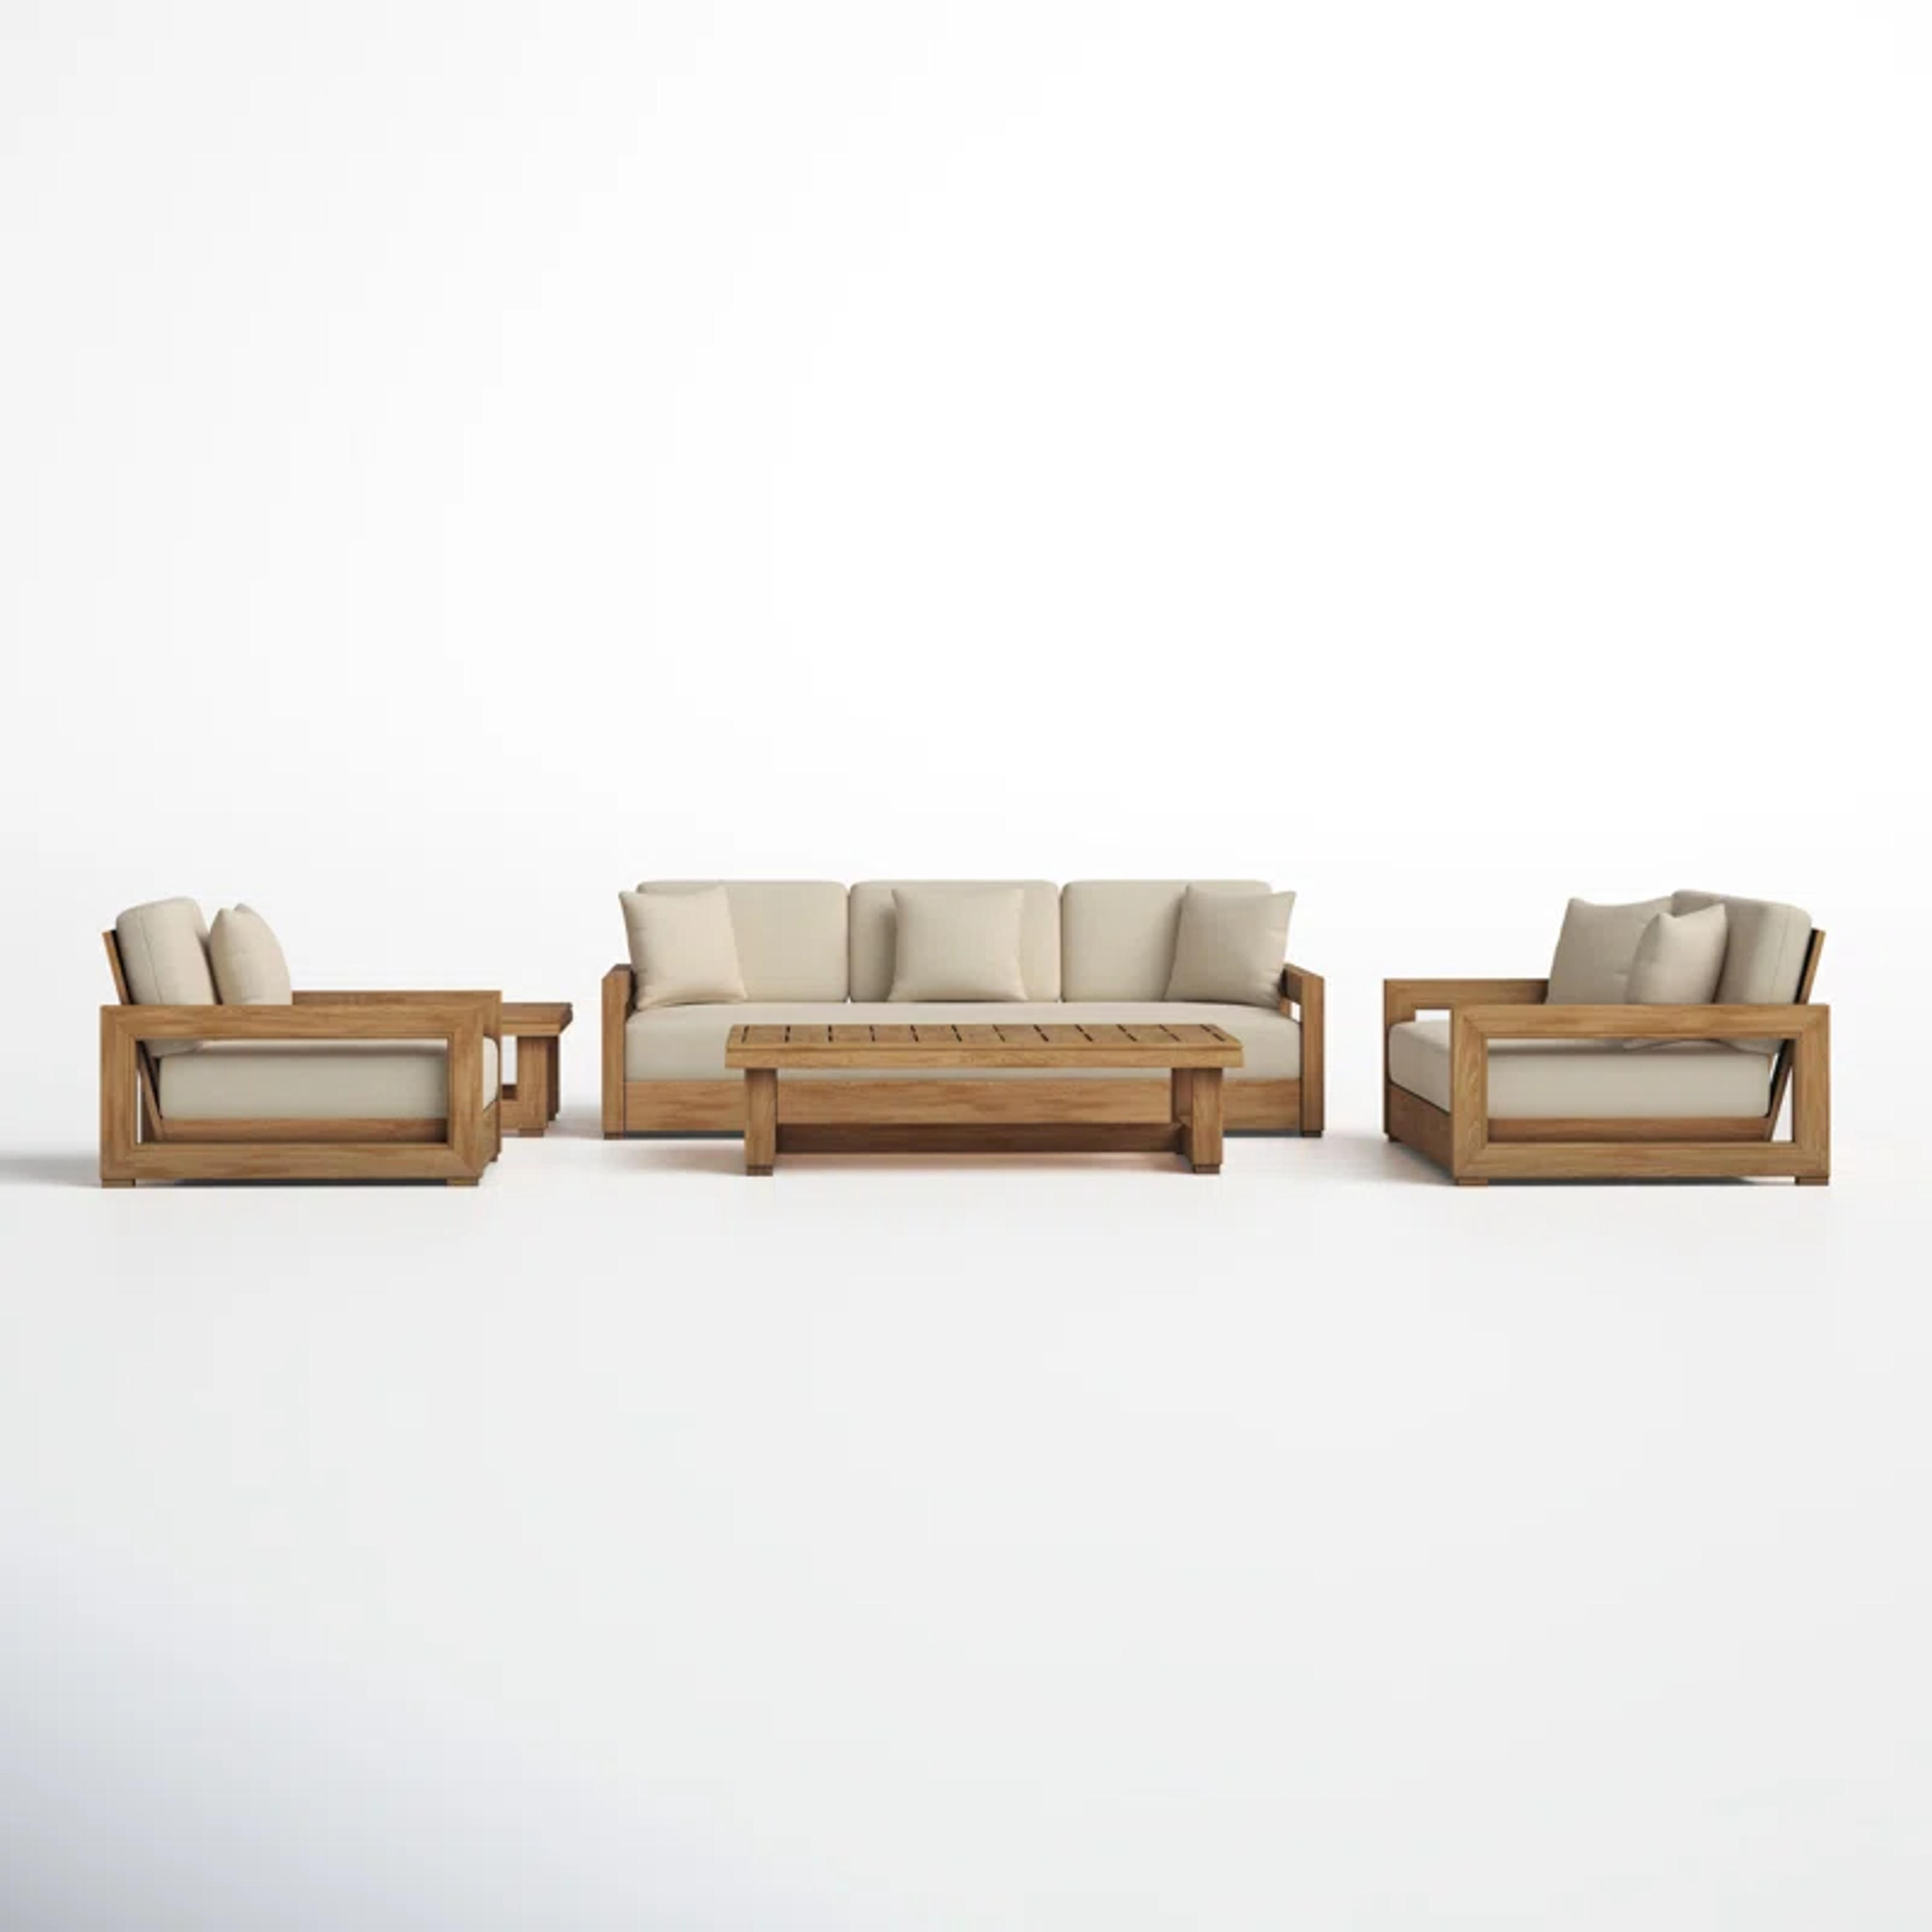 Joss & Main Melrose 5 - Piece Teak Sofa Seating Group with Cushions & Reviews | Wayfair